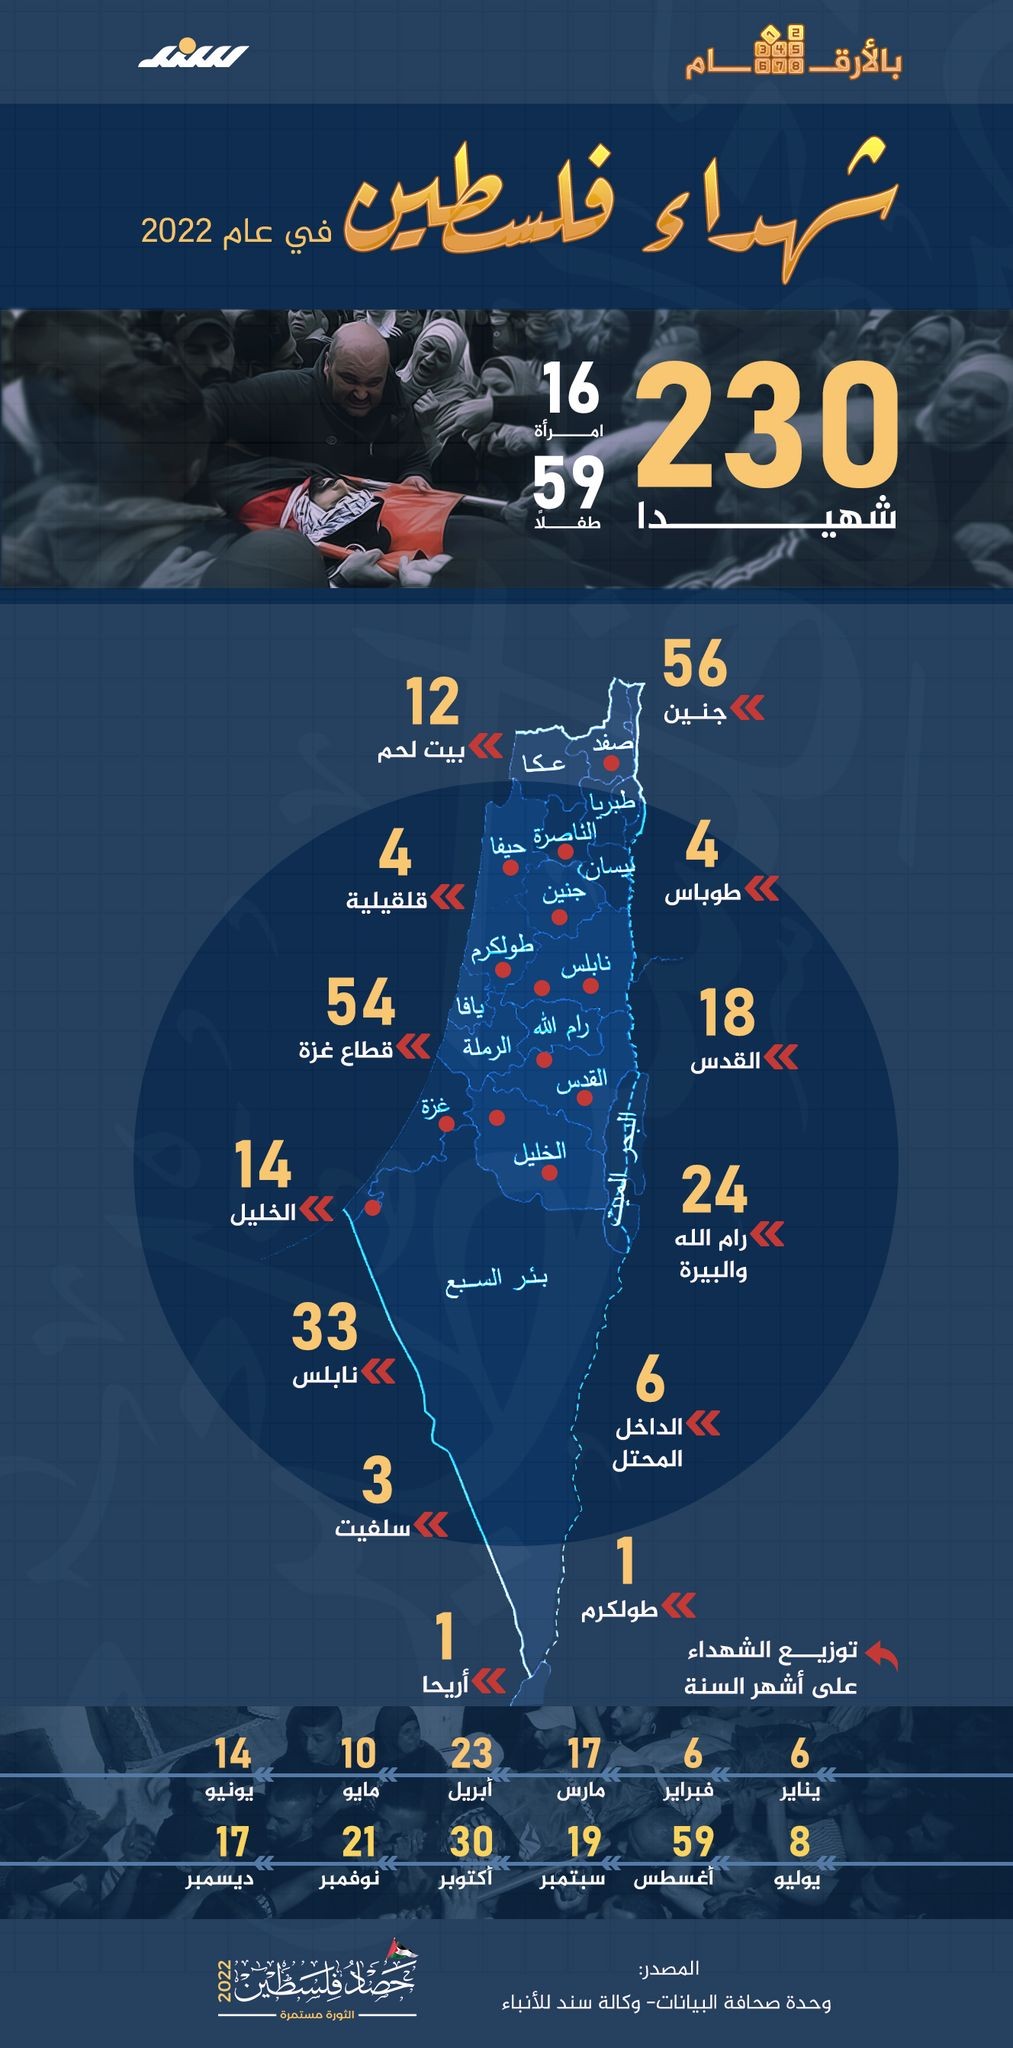 انفوجرافيك شهداء فلسطين 2022.jpg